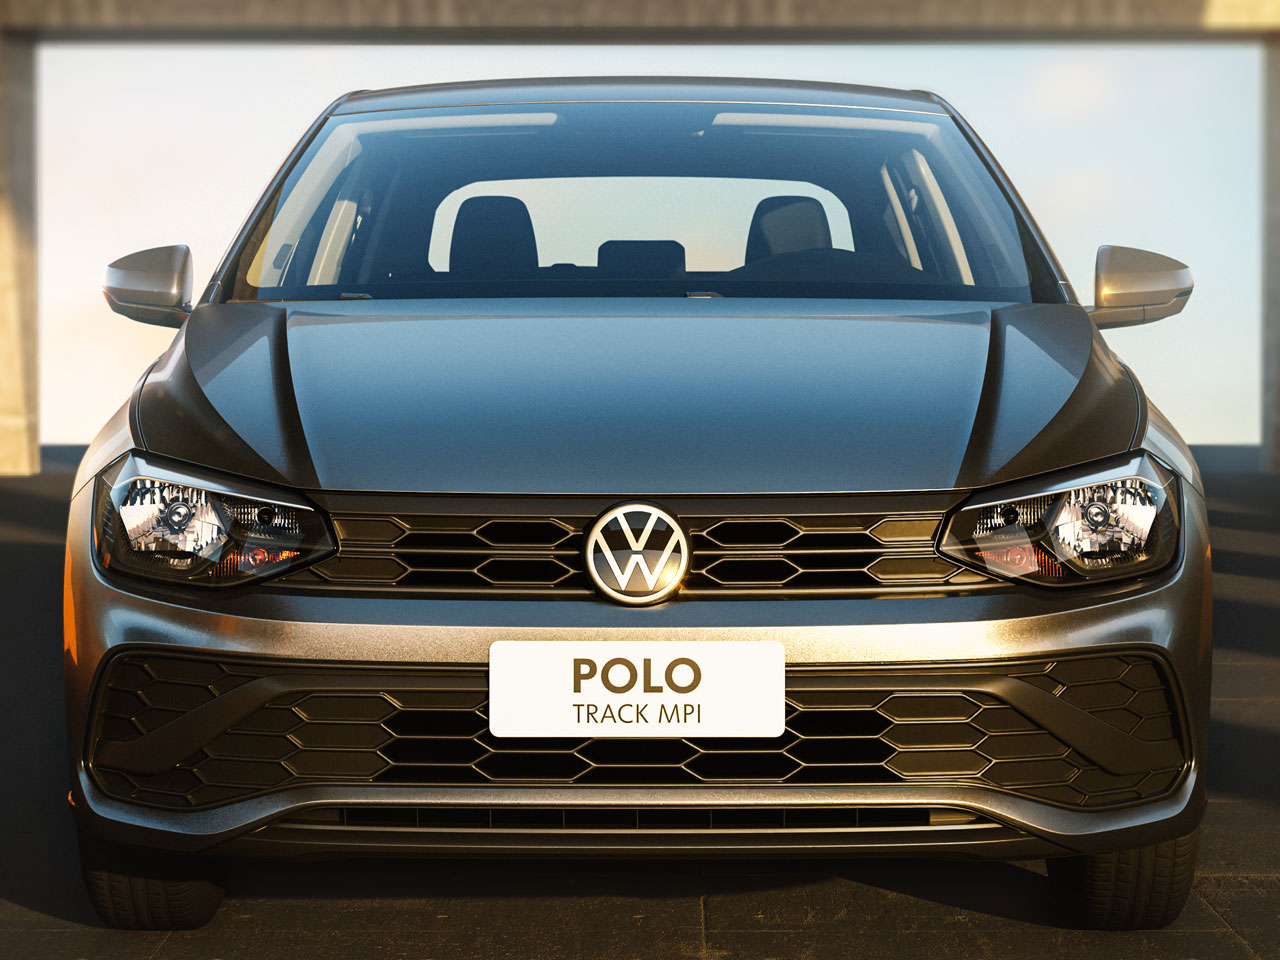 VW mostra o novo Polo. Nada a ver com o Gol